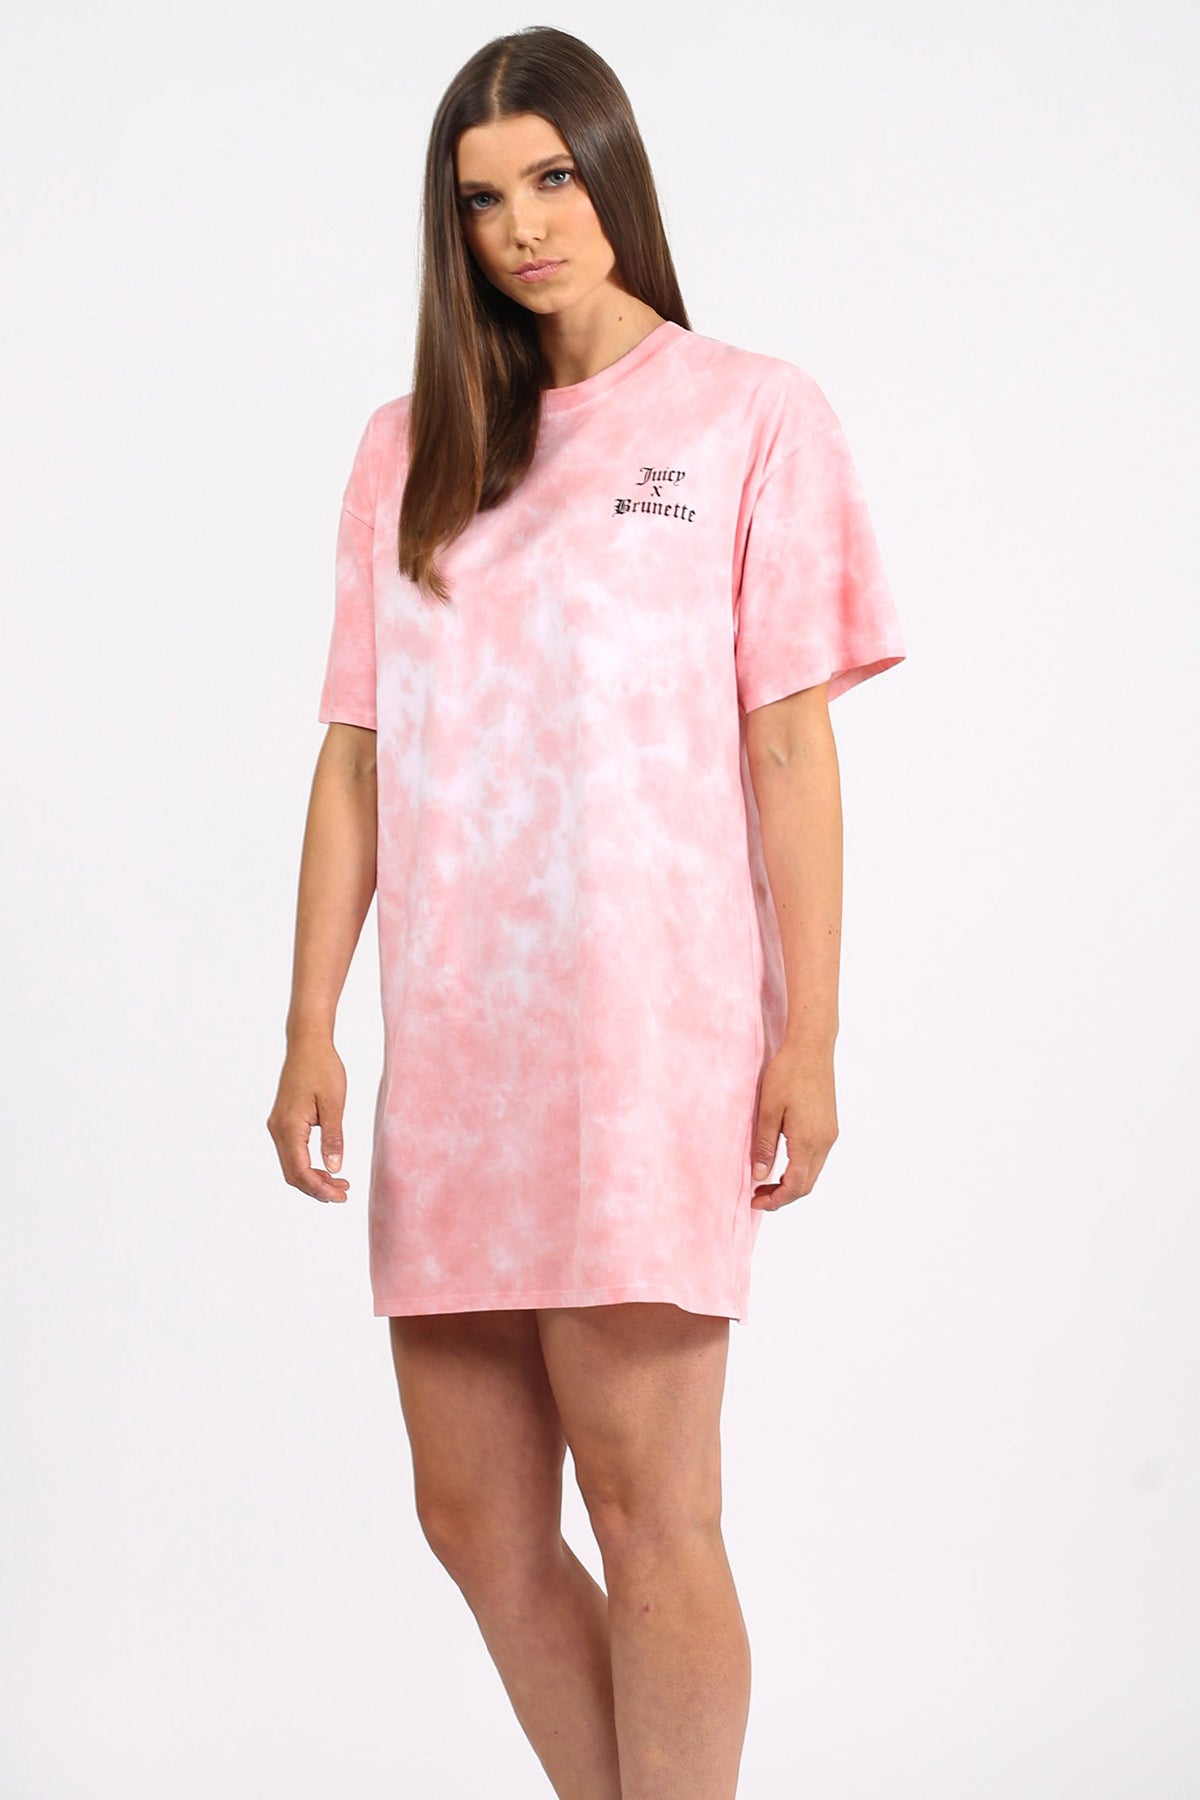 The "JUICY X BRUNETTE" Pink Marble Tie-Dye Boxy Tee Dress